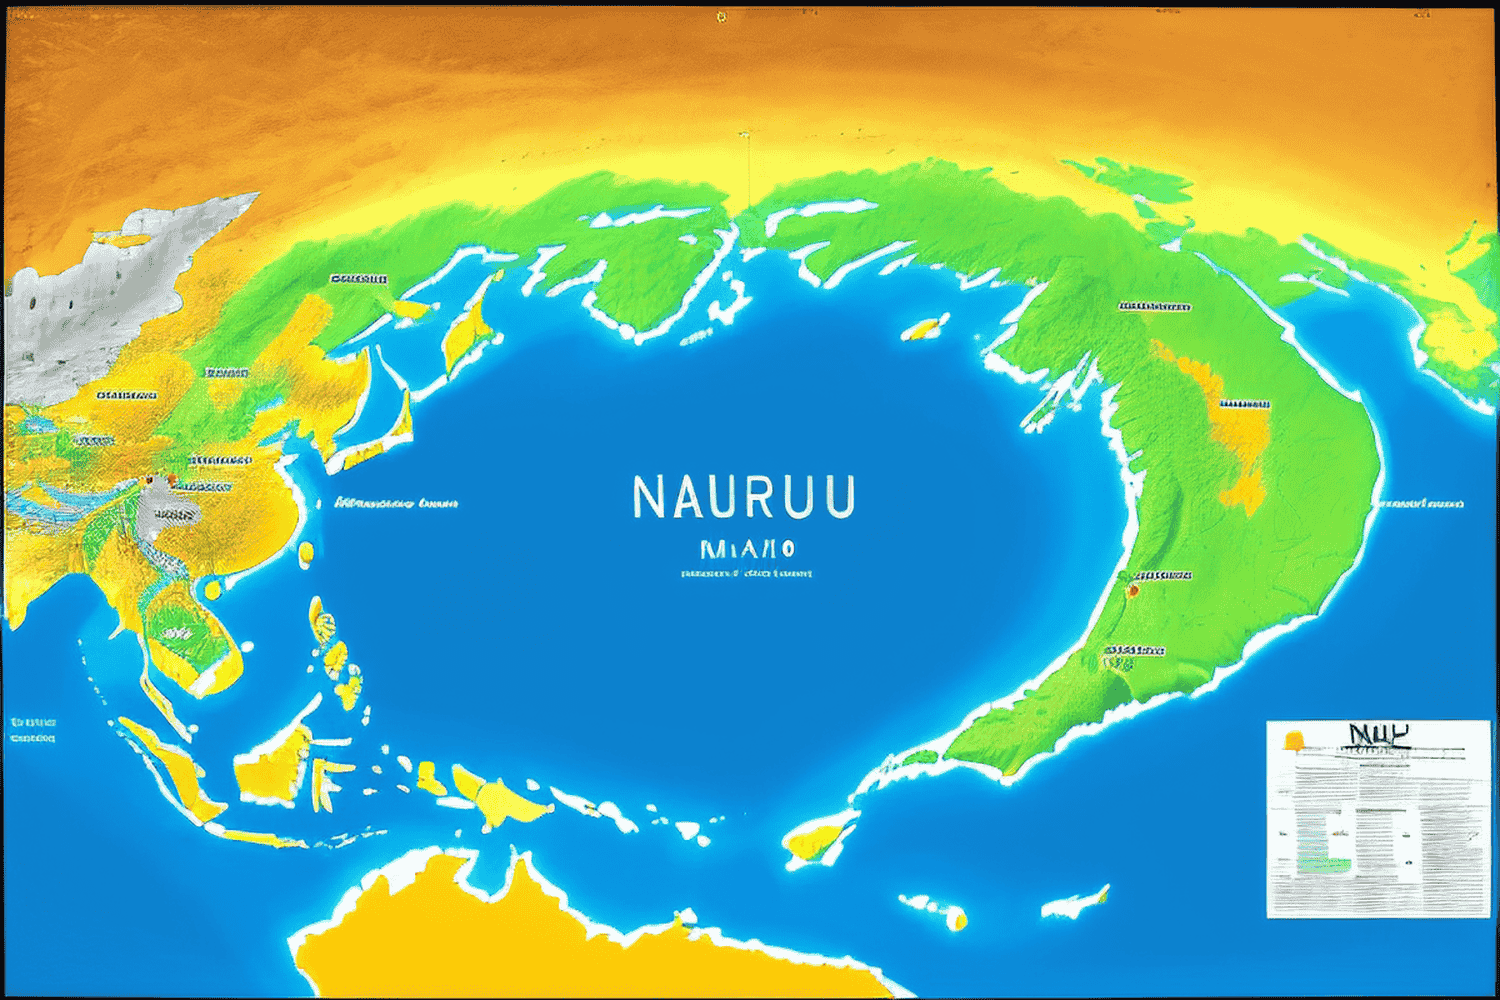 Information about Nauru